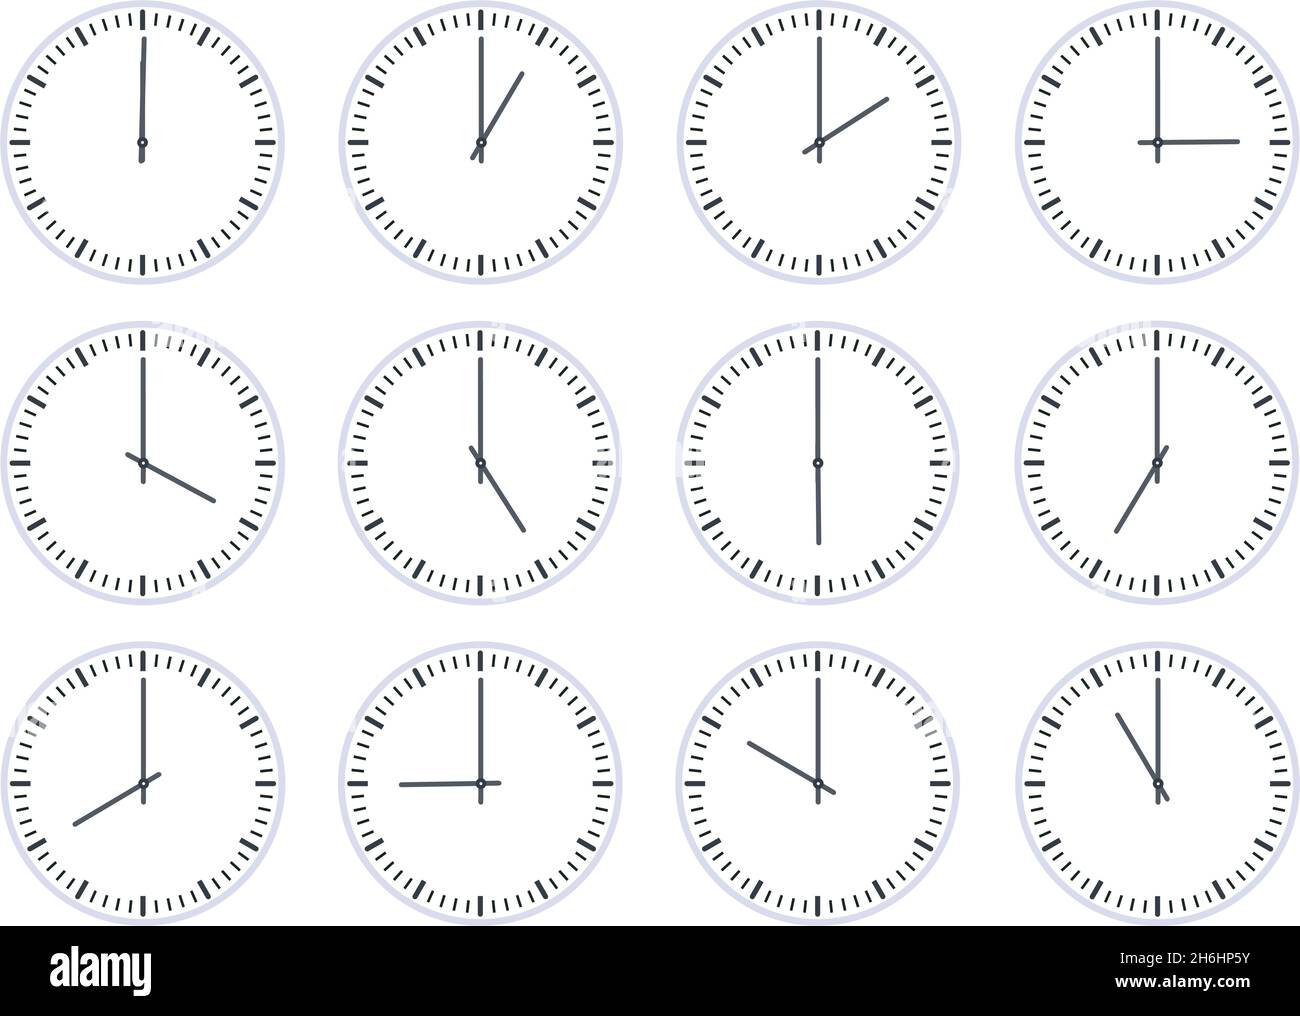 Die analoge Kreisuhr zeigt das Symbol „Uhrzeit pro Stunde“ an. Flaches Ziffernblatt mit 12 Uhr, Timer-Animation. Wanduhren ein bis zwölf Stunden Vektorsatz Stock Vektor